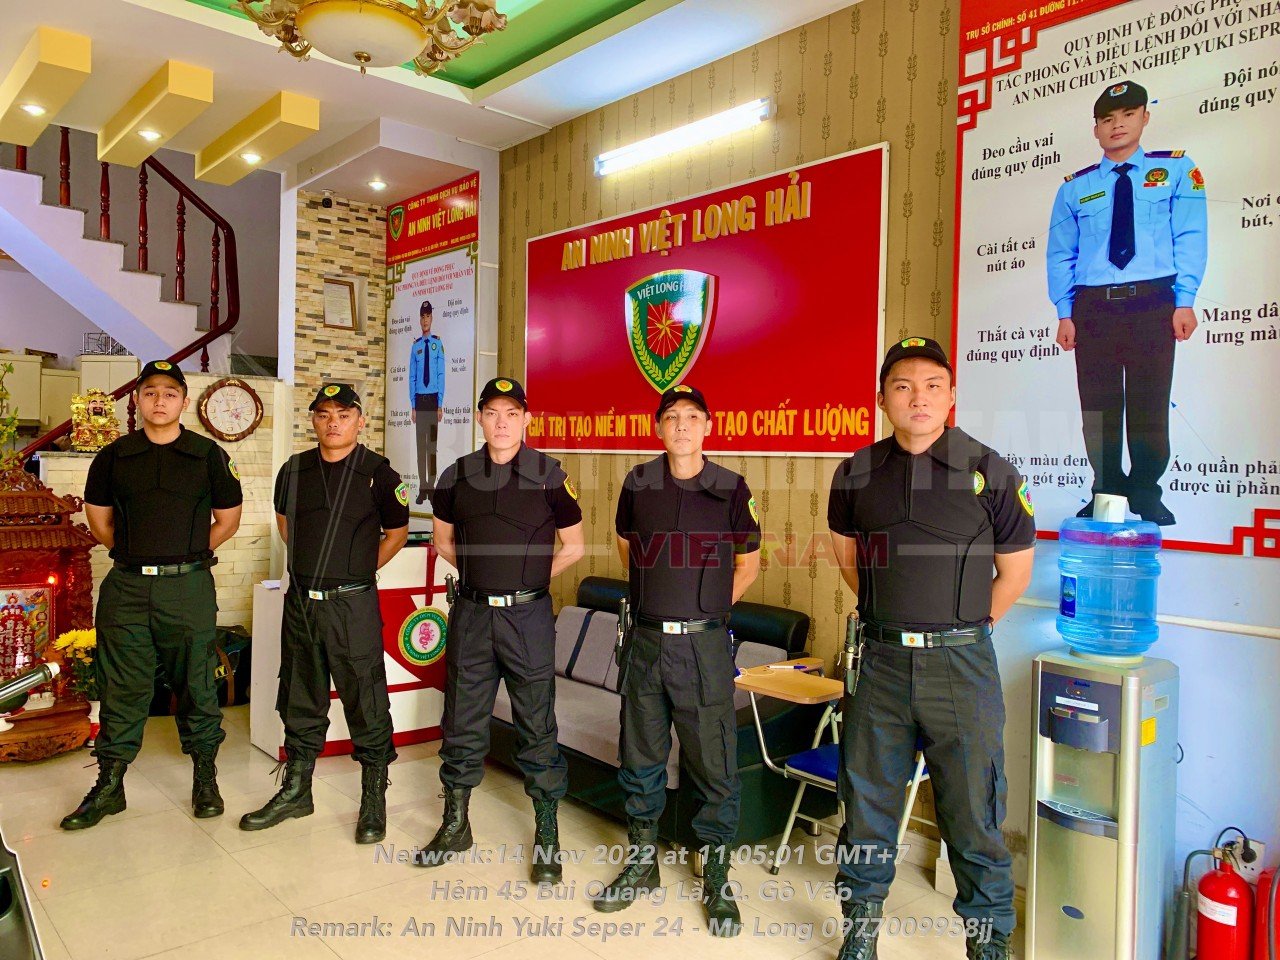 Dịch vụ bảo vệ - Bảo Vệ Việt Long Hải - Công Ty TNHH Dịch Vụ Bảo Vệ An Ninh Việt Long Hải